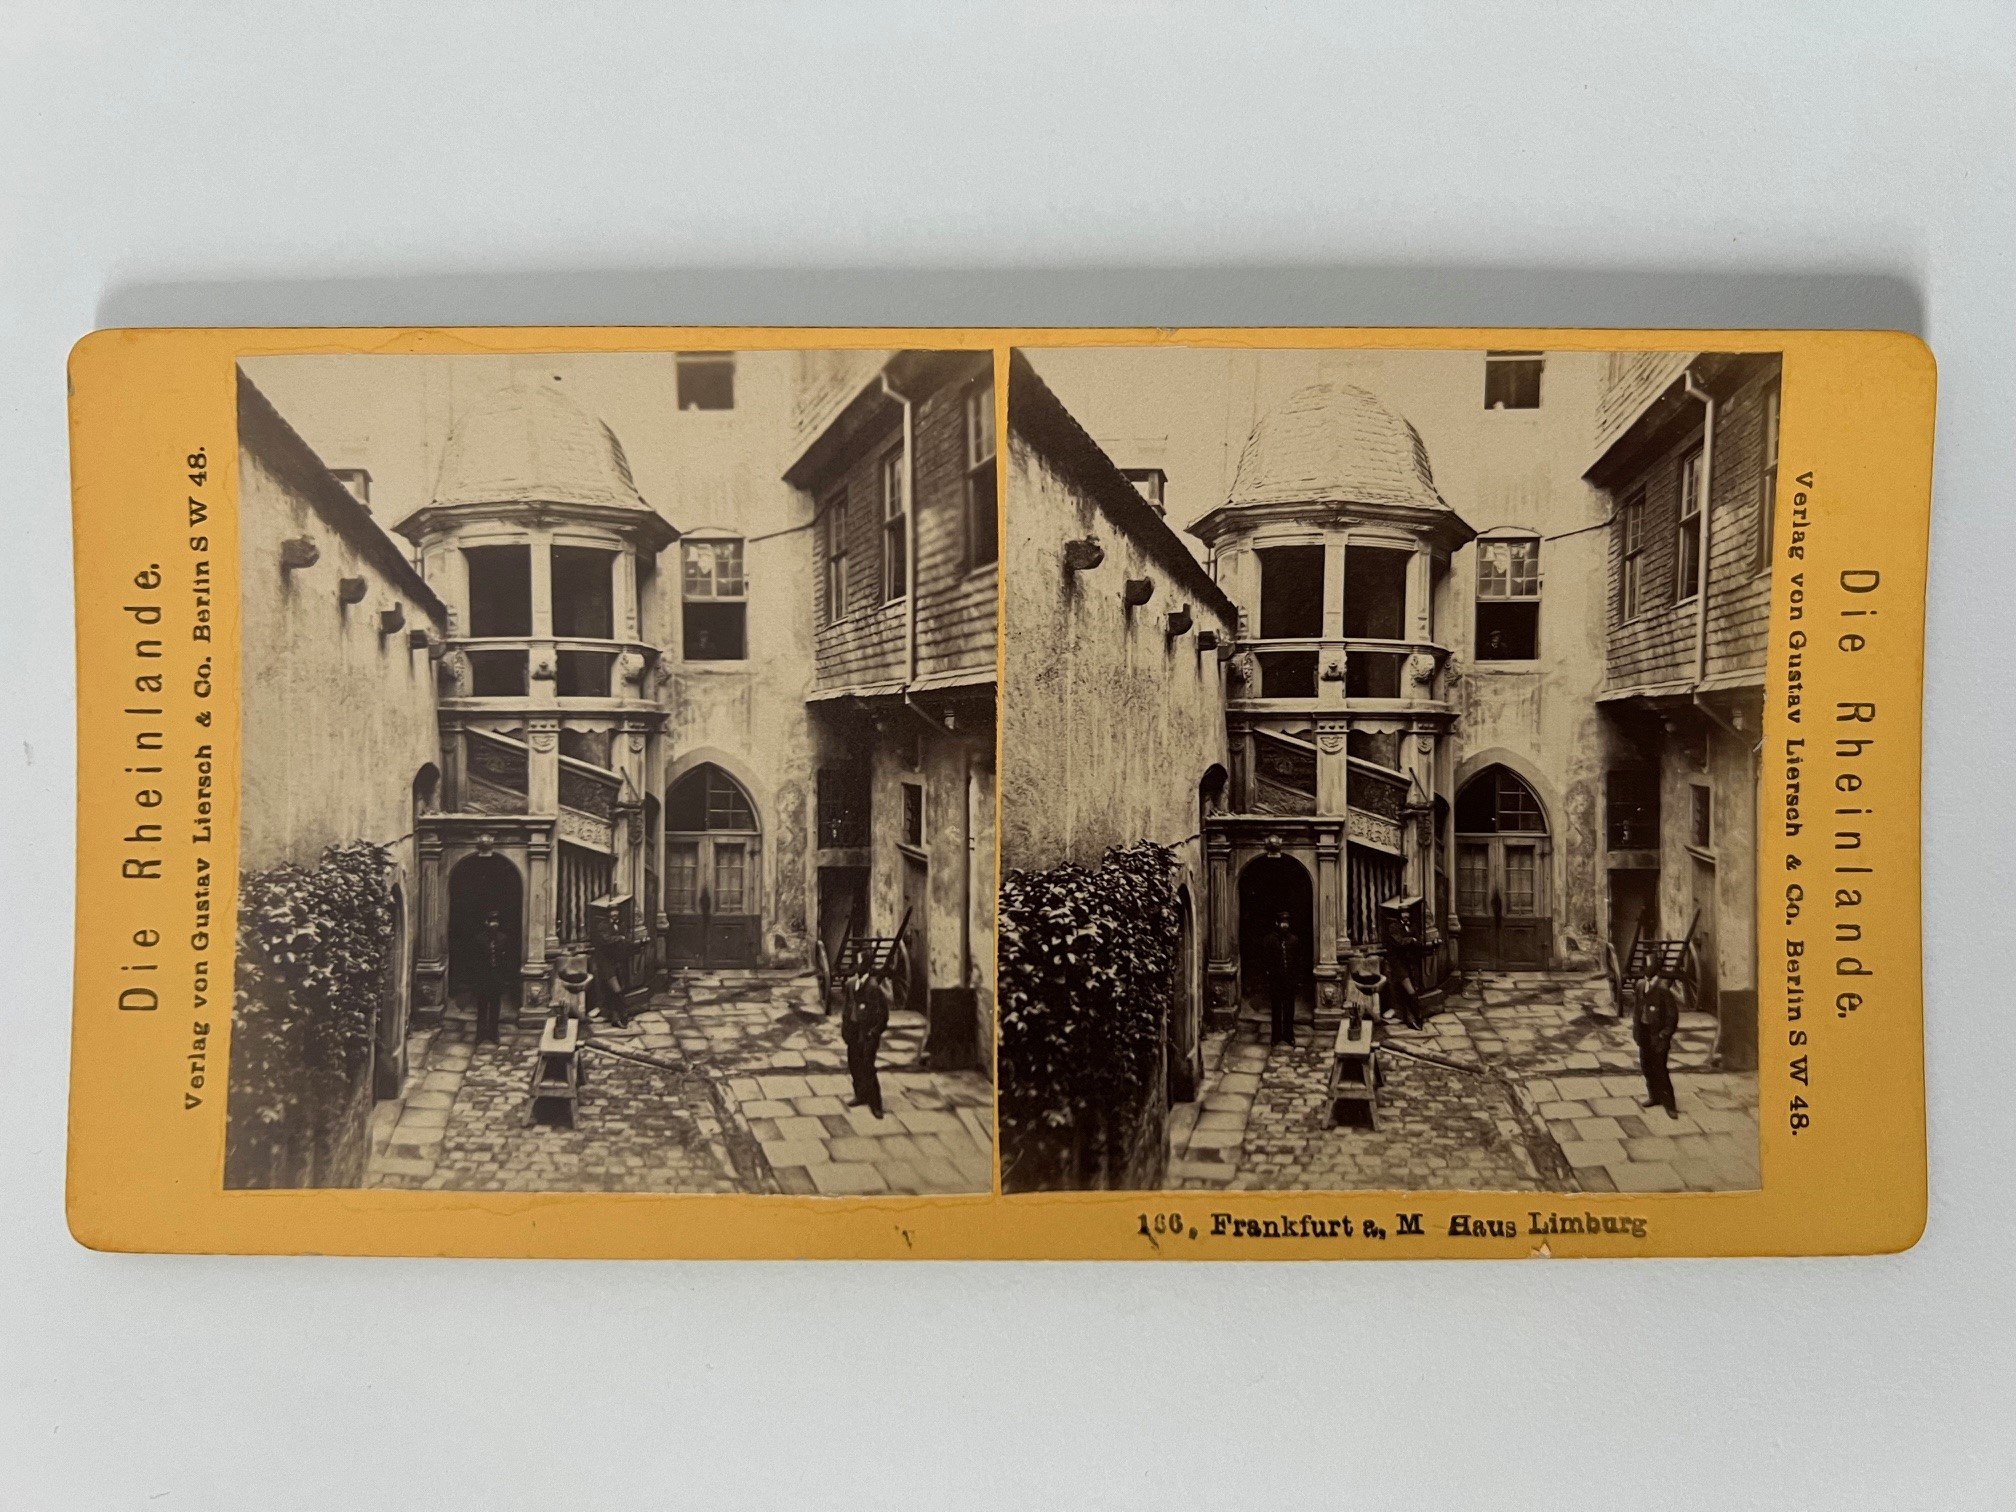 Stereobild, Verlag Gustav Liersch, Frankfurt, Nr. 166, Haus Limburg, ca. 1881. (Taunus-Rhein-Main - Regionalgeschichtliche Sammlung Dr. Stefan Naas CC BY-NC-SA)